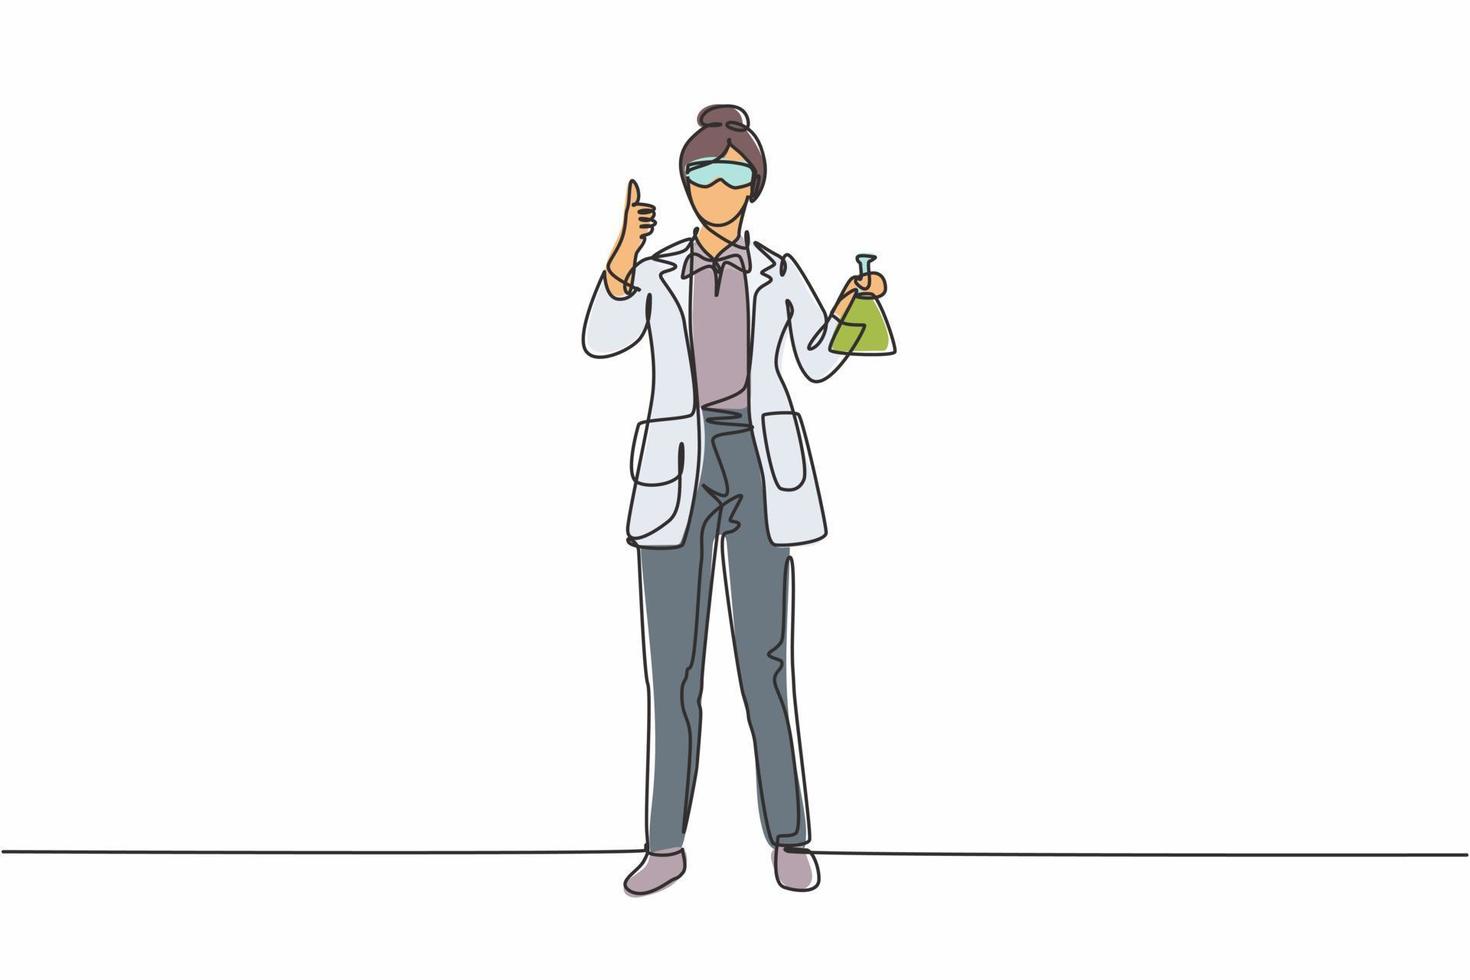 enda kontinuerlig linjeteckning kvinnlig forskare står med tummen upp och håller ett mätrör fyllt med en kemisk vätska. dynamisk en linje rita grafisk design vektor illustration